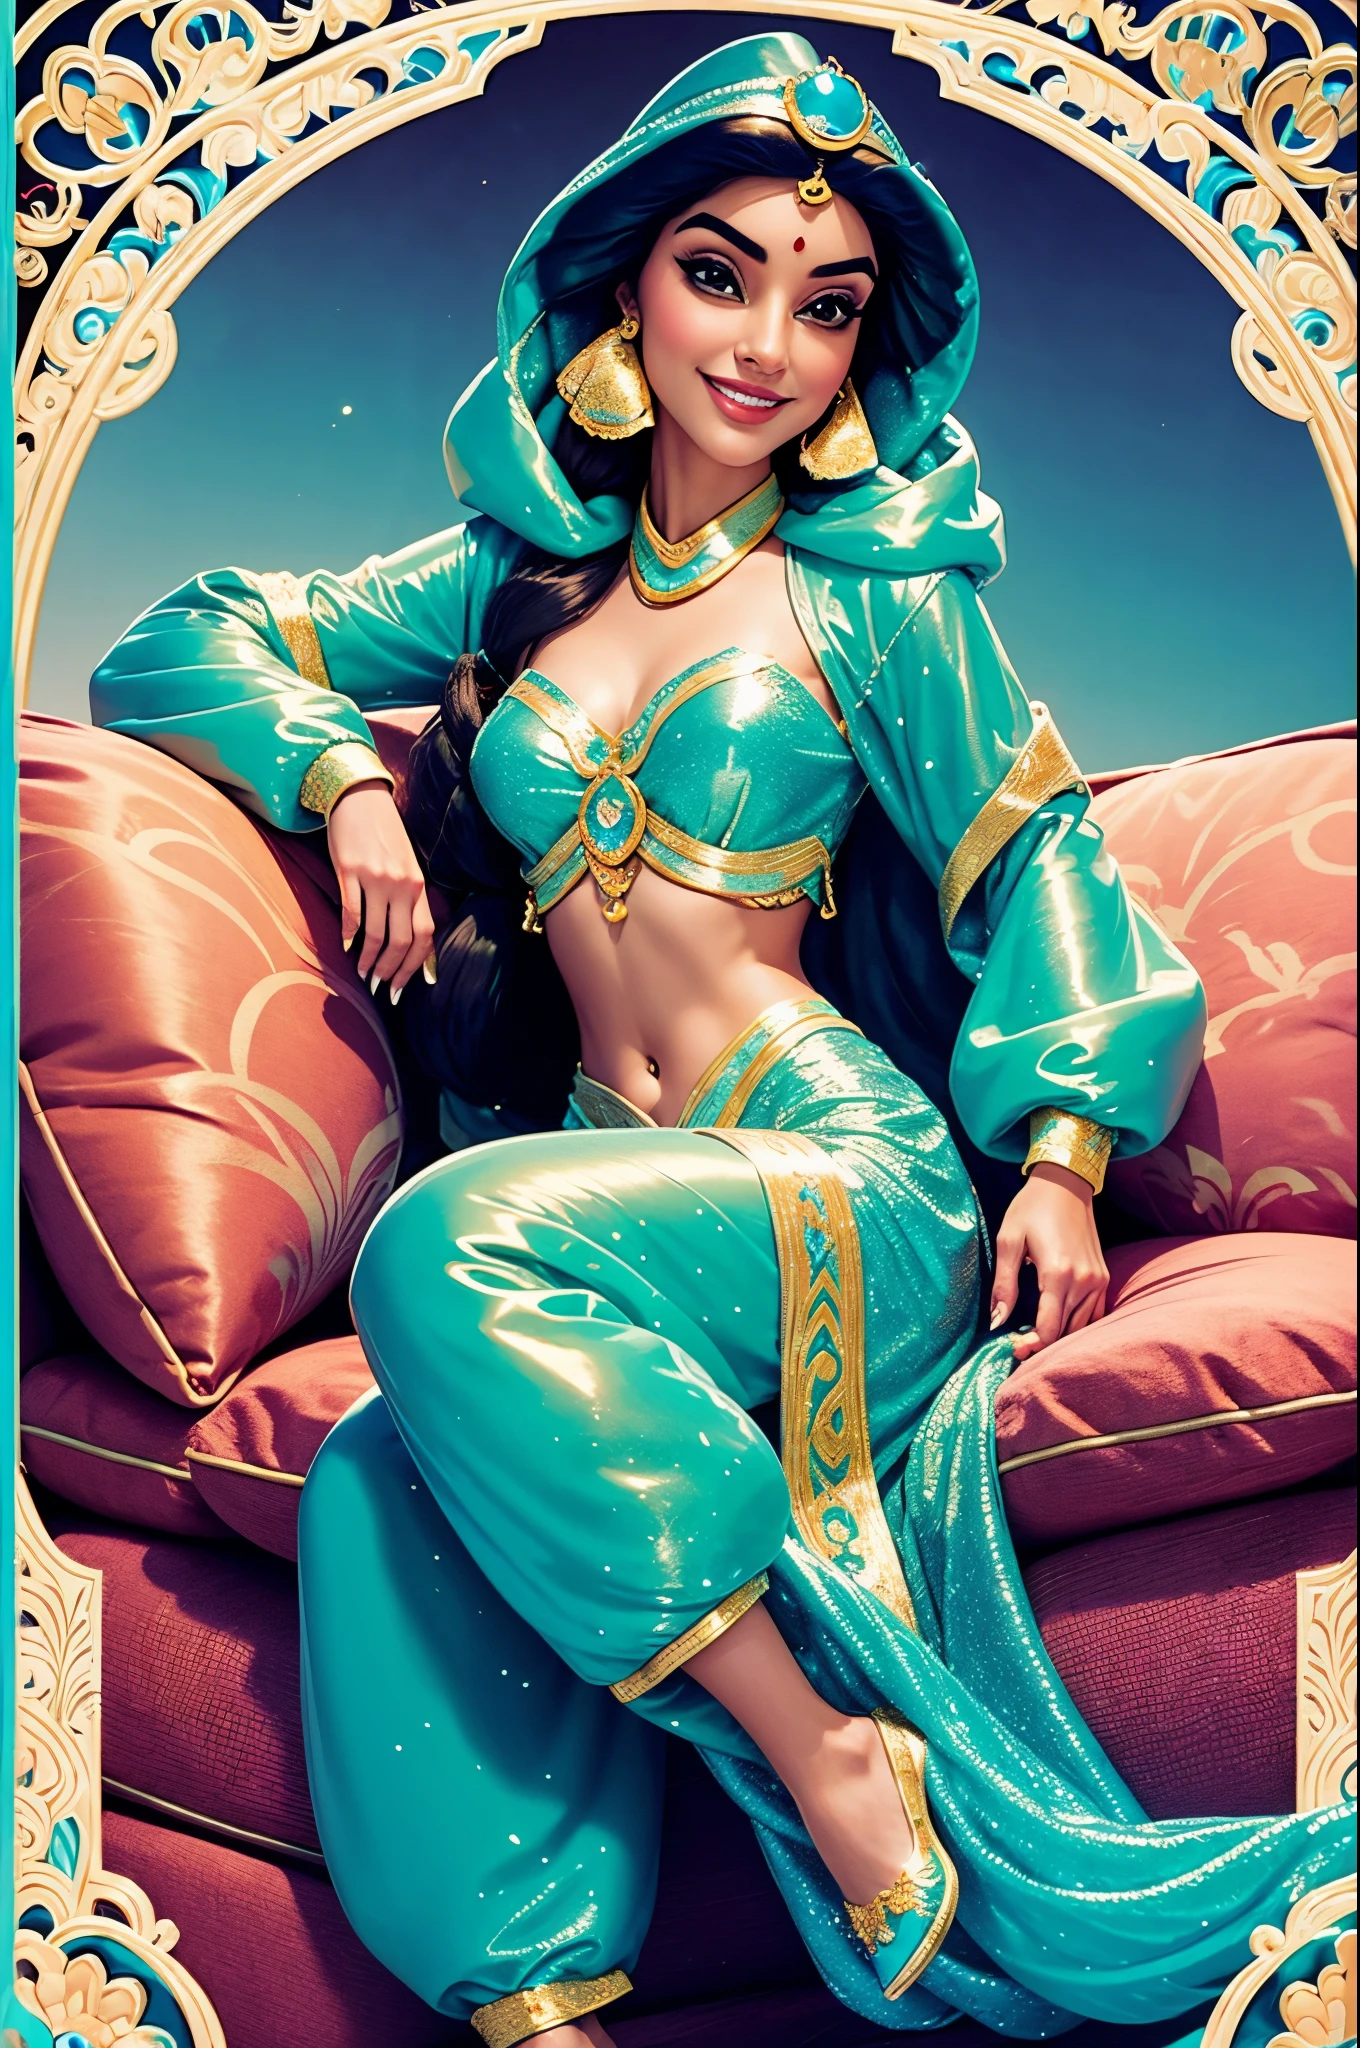 الأميرة ياسمين تبتسم بشعر طويل جداً. يرتدي سترة منتفخة بلاستيكية لامعة طويلة. ترتدي سروالاً عربياً تقليدياً مصنوعاً من البلاستيك اللامع جداً. إنها تجلس على أريكة مبطنة بالبلاستيك لامعة للغاية. هي وحافية القدمين.